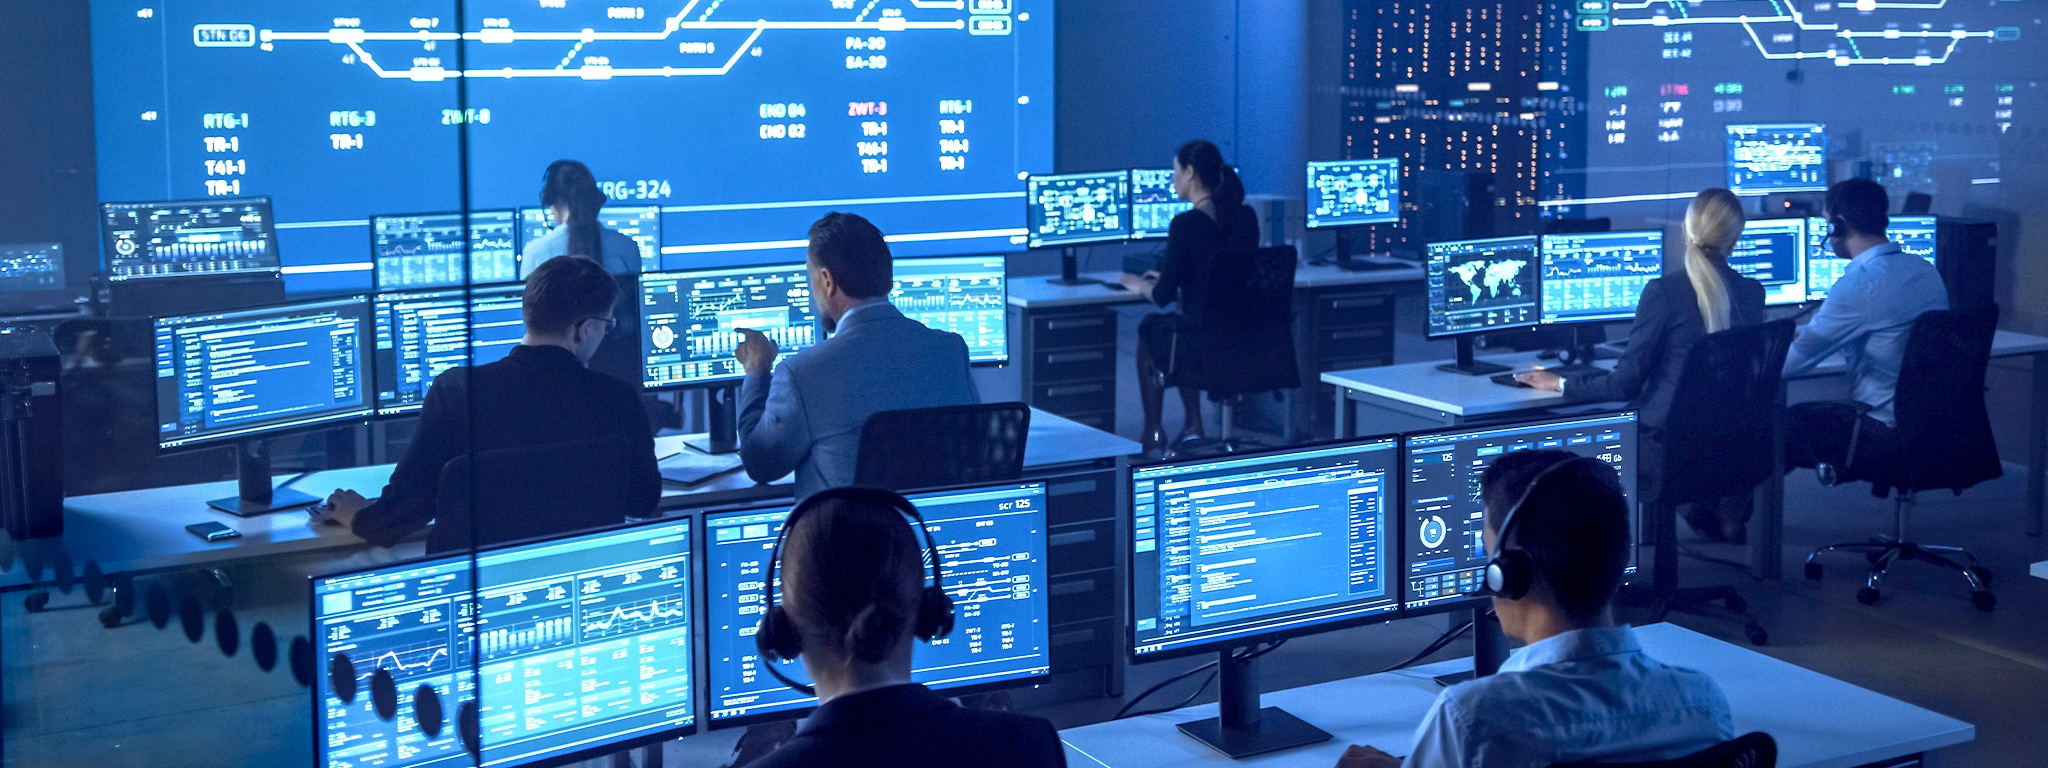 Equipe de segurança nacional trabalhando em uma sala de monitoramento em computadores com telas mostrando gráficos, imagens e estatísticas